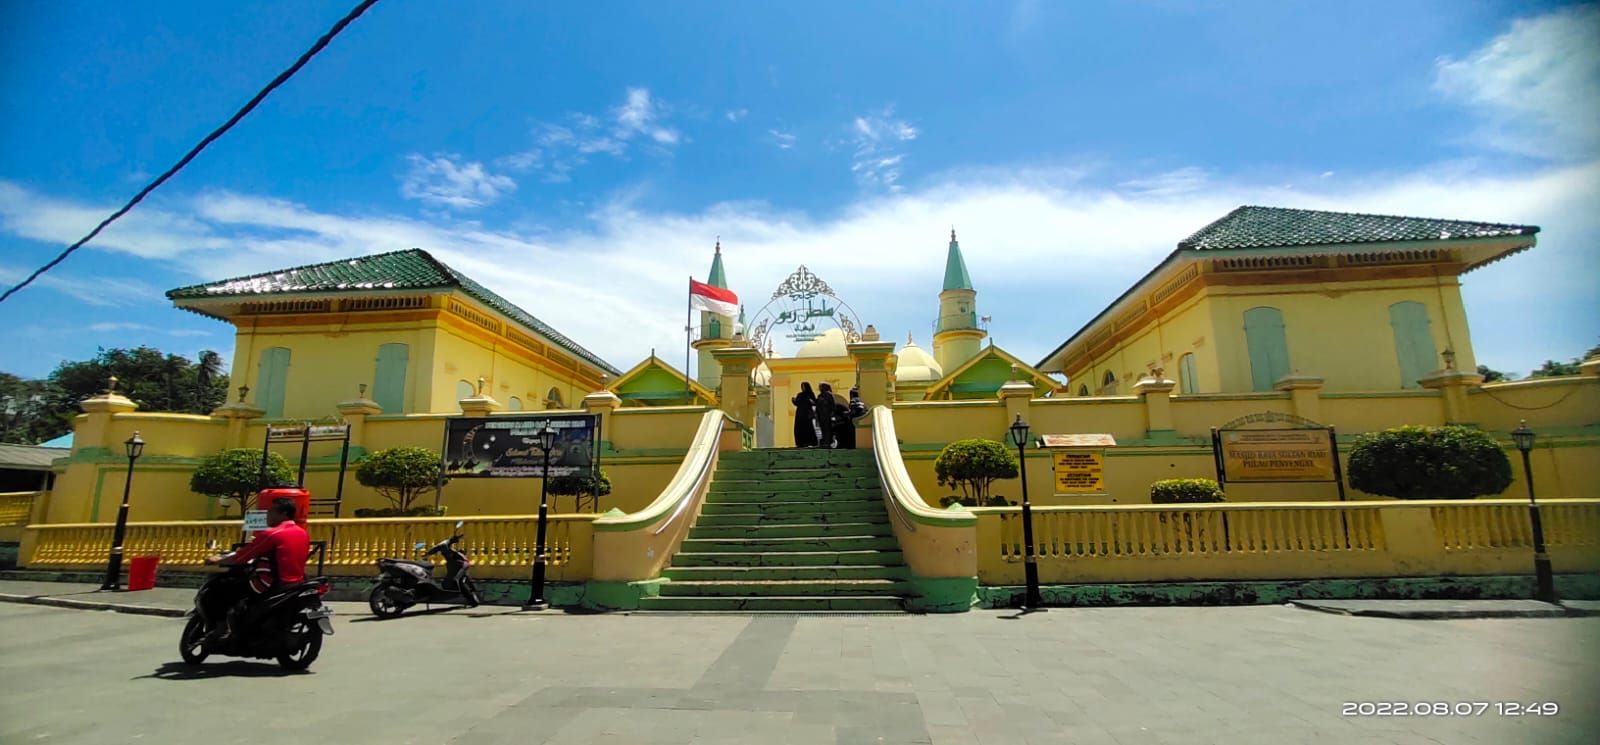 Potret Masjid Raya Sultan Riau atau sering disebut Masjid Putih Telur yang berada di Pulau Penyengat, Tanjung Pinang.